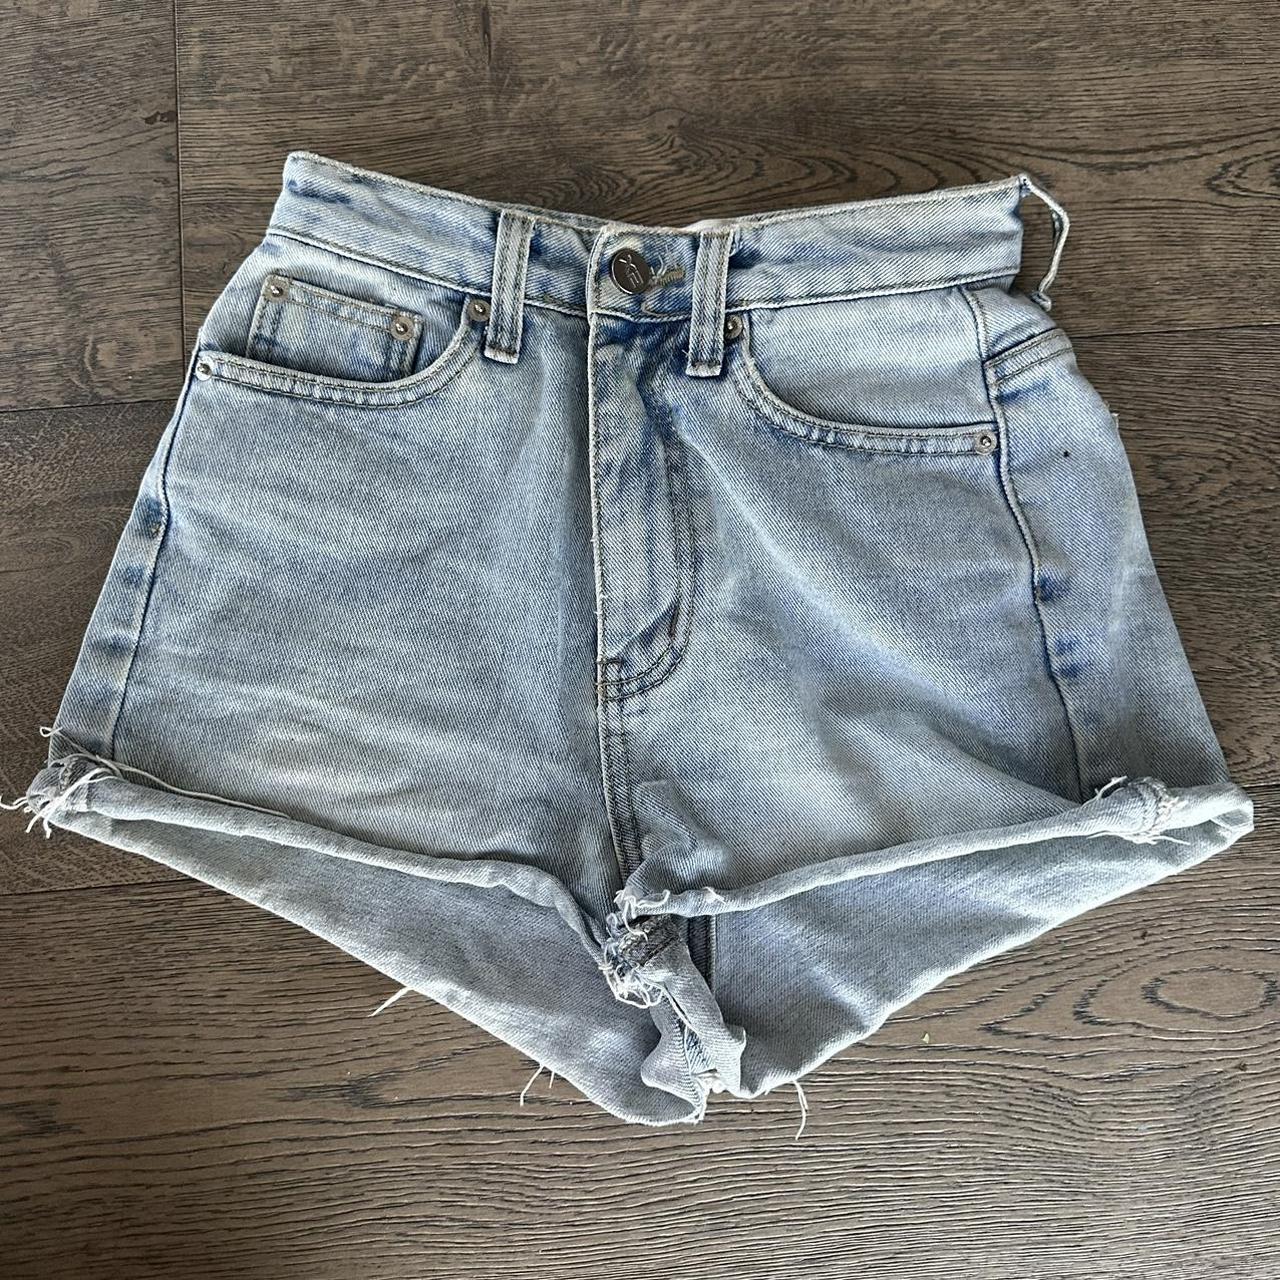 Vintage denim cut off shorts size small #vintage... - Depop